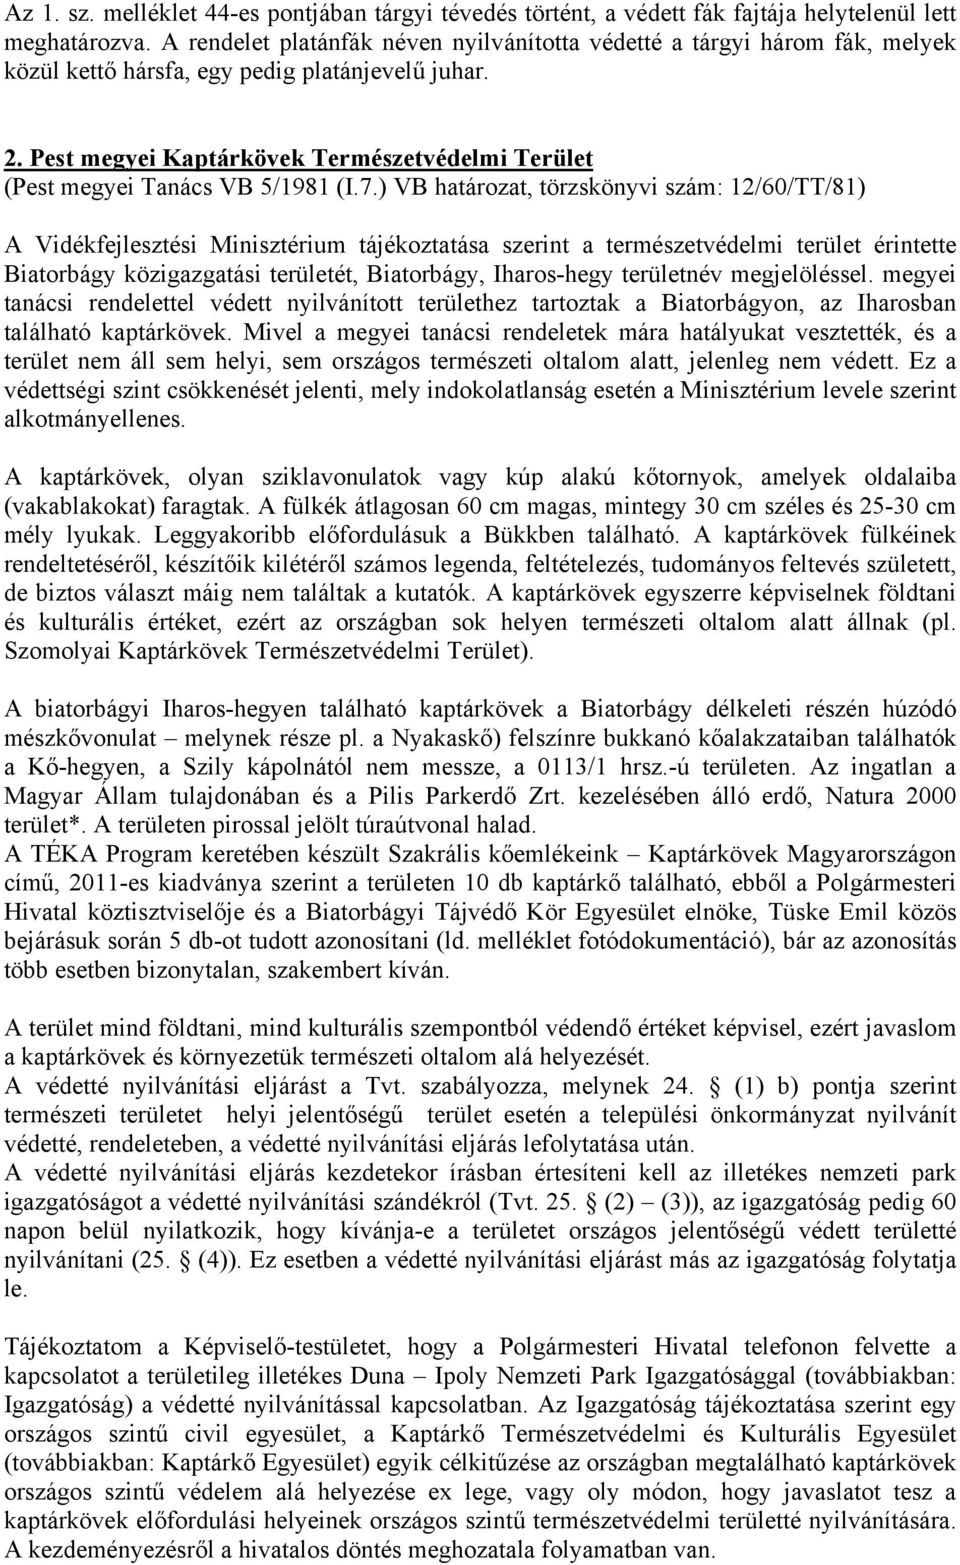 Pest megyei Kaptárkövek Természetvédelmi Terület (Pest megyei Tanács VB 5/1981 (I.7.